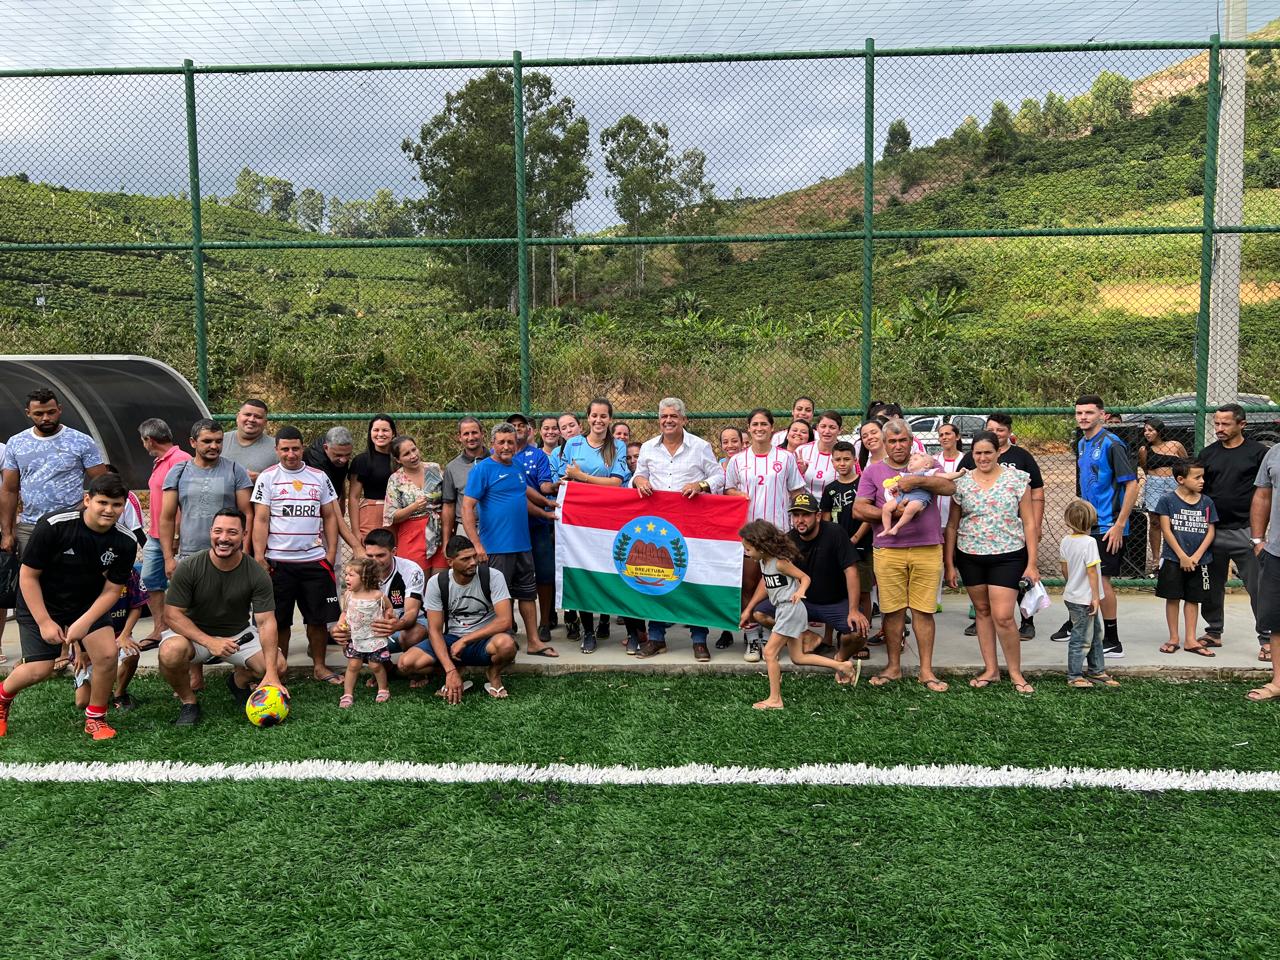 A Prefeitura Municipal de Brejetuba inaugurou um Campo de Futebol Society no Distrito de São Jorge